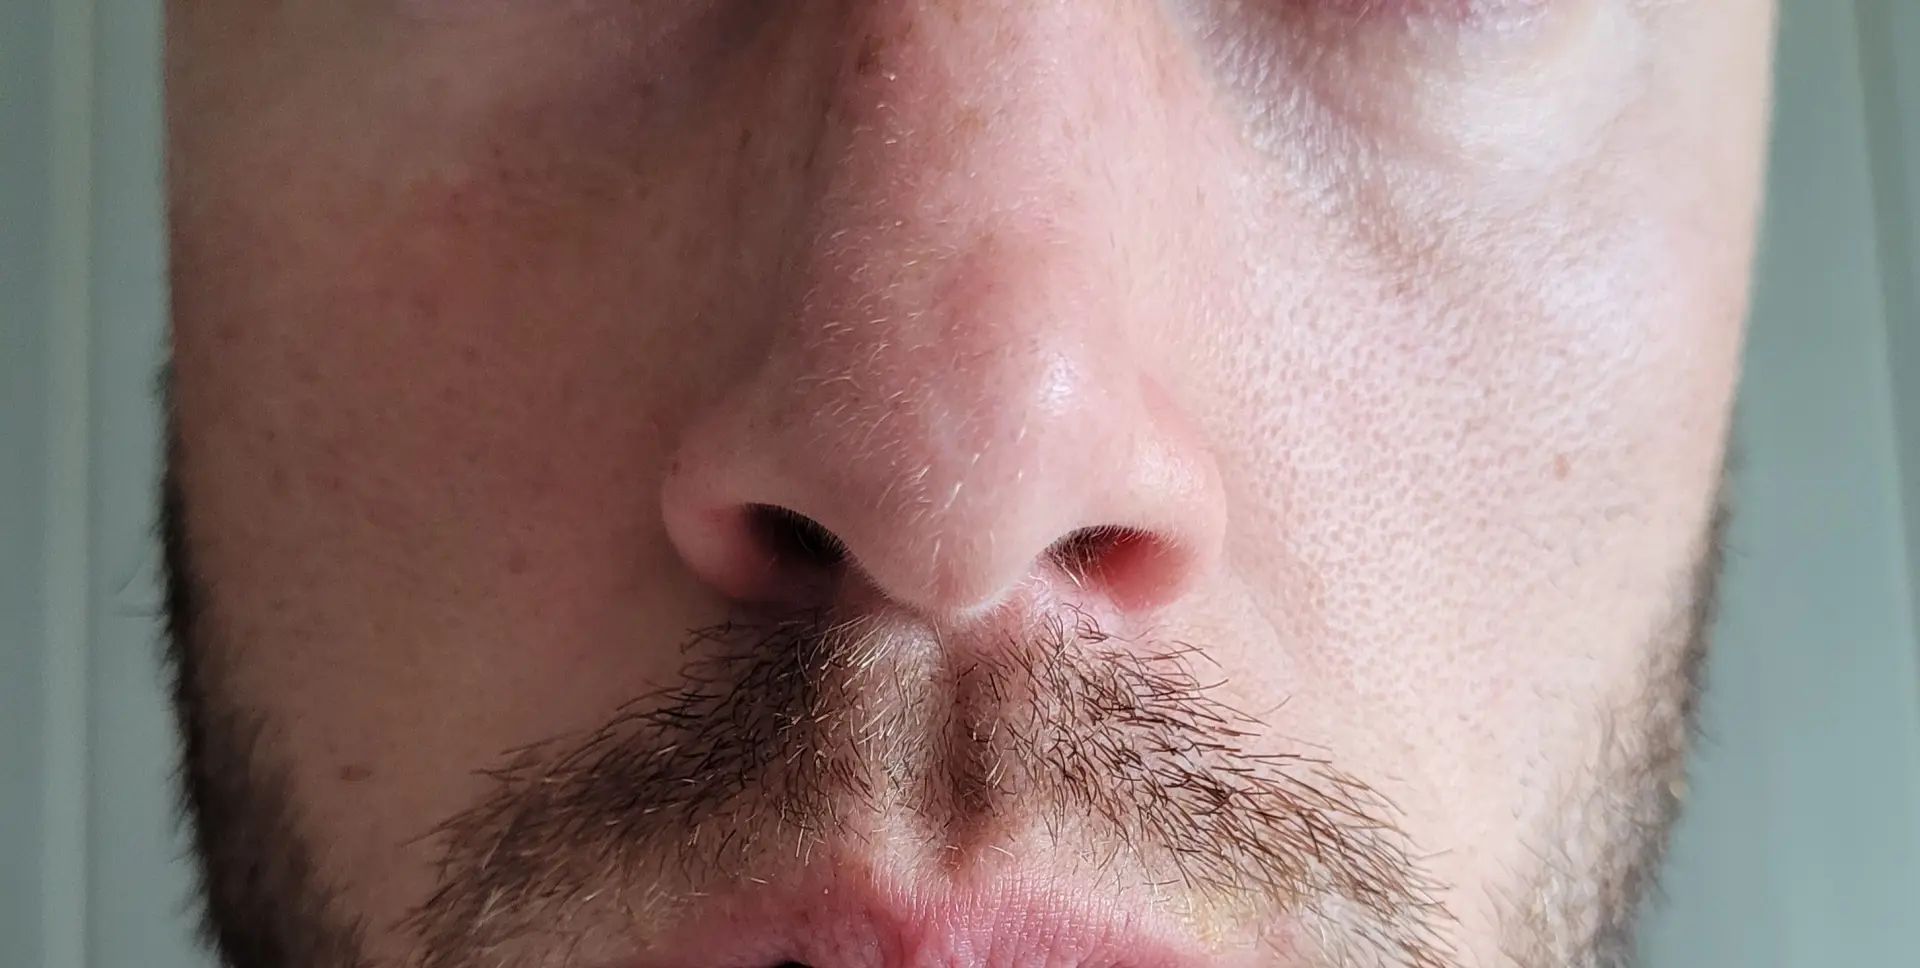 Pointe du nez gonflé d'un côté - Rhinoplastie (chirurgie du nez ...